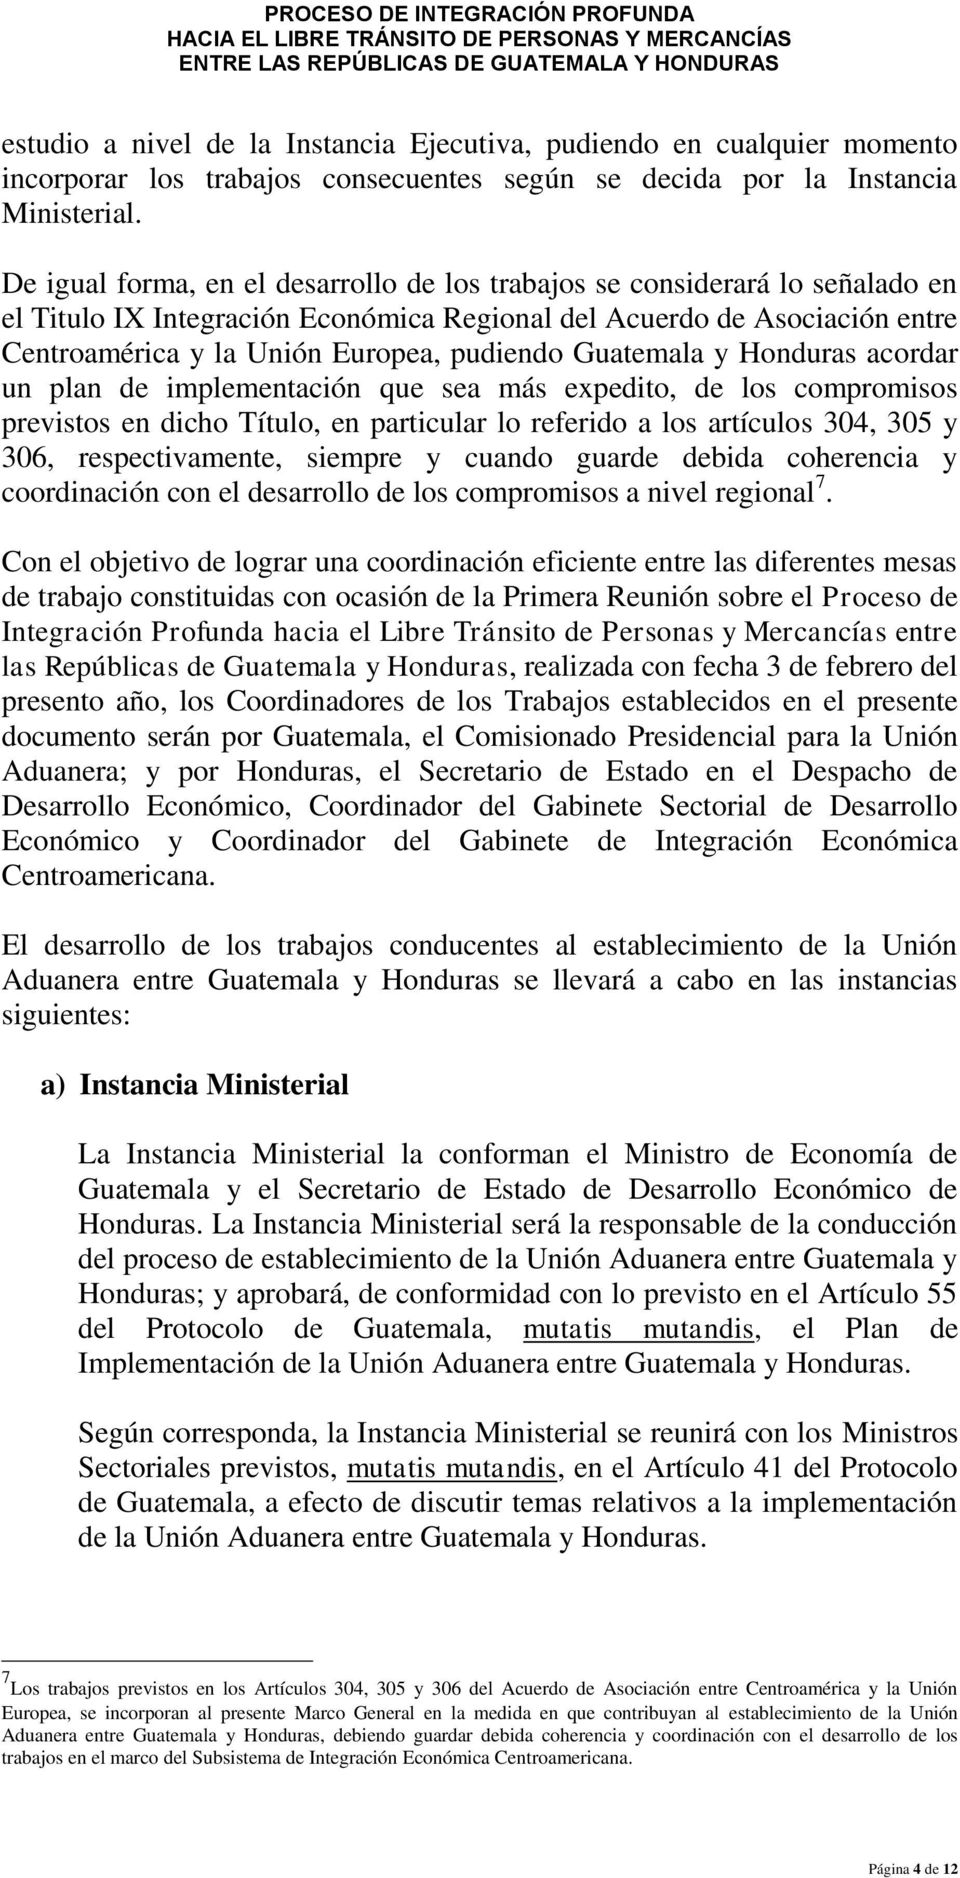 Guatemala y Honduras acordar un plan de implementación que sea más expedito, de los compromisos previstos en dicho Título, en particular lo referido a los artículos 304, 305 y 306, respectivamente,